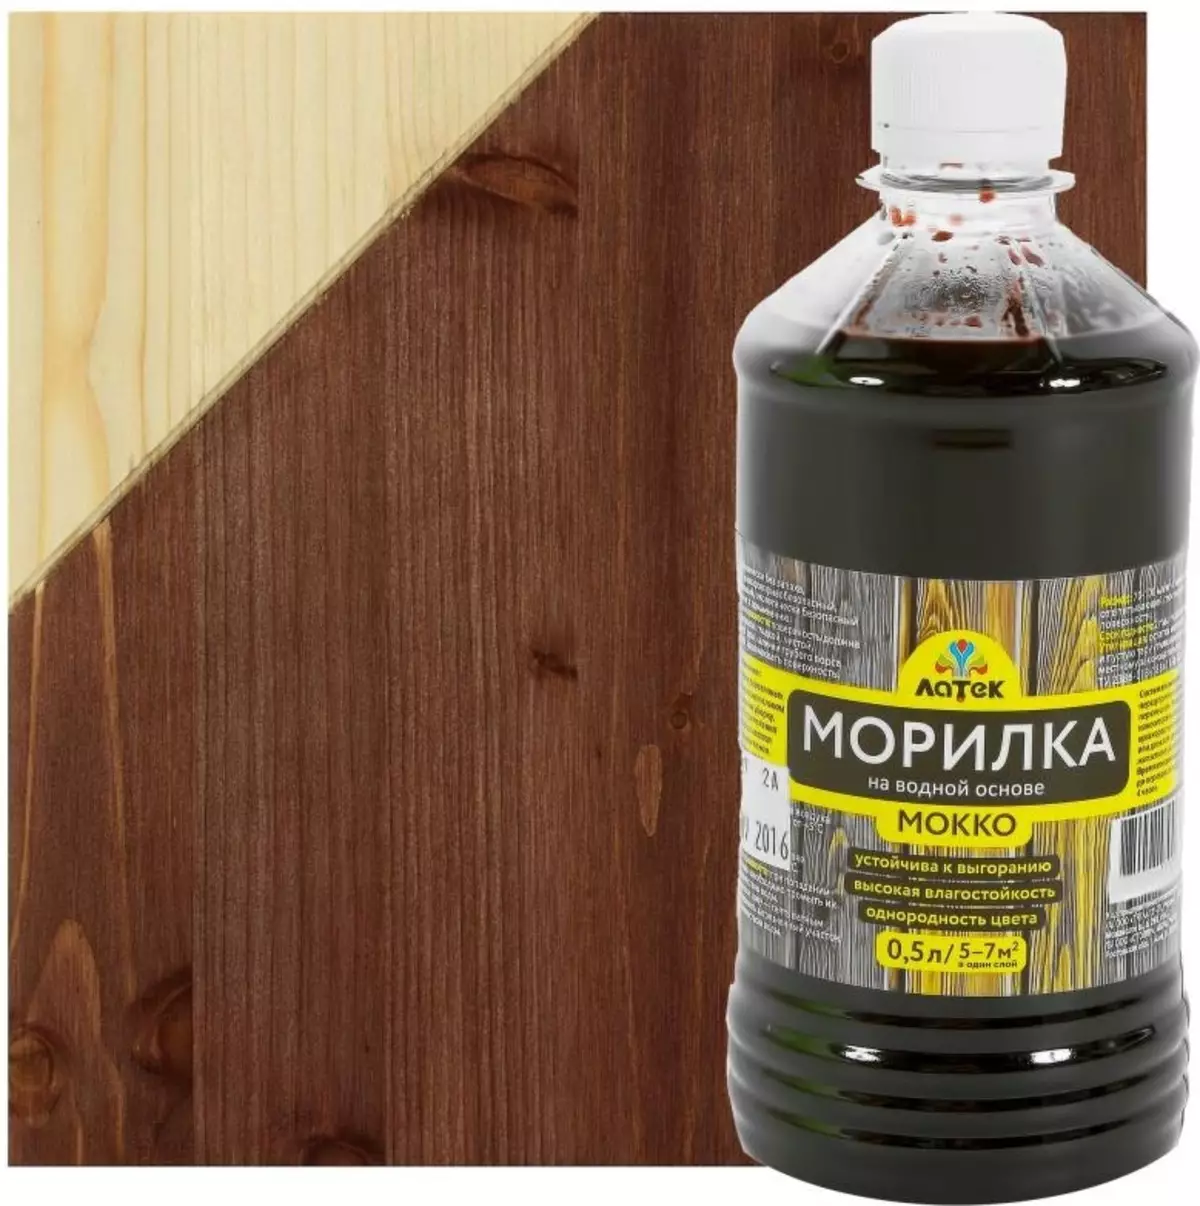 Morilka for Wood